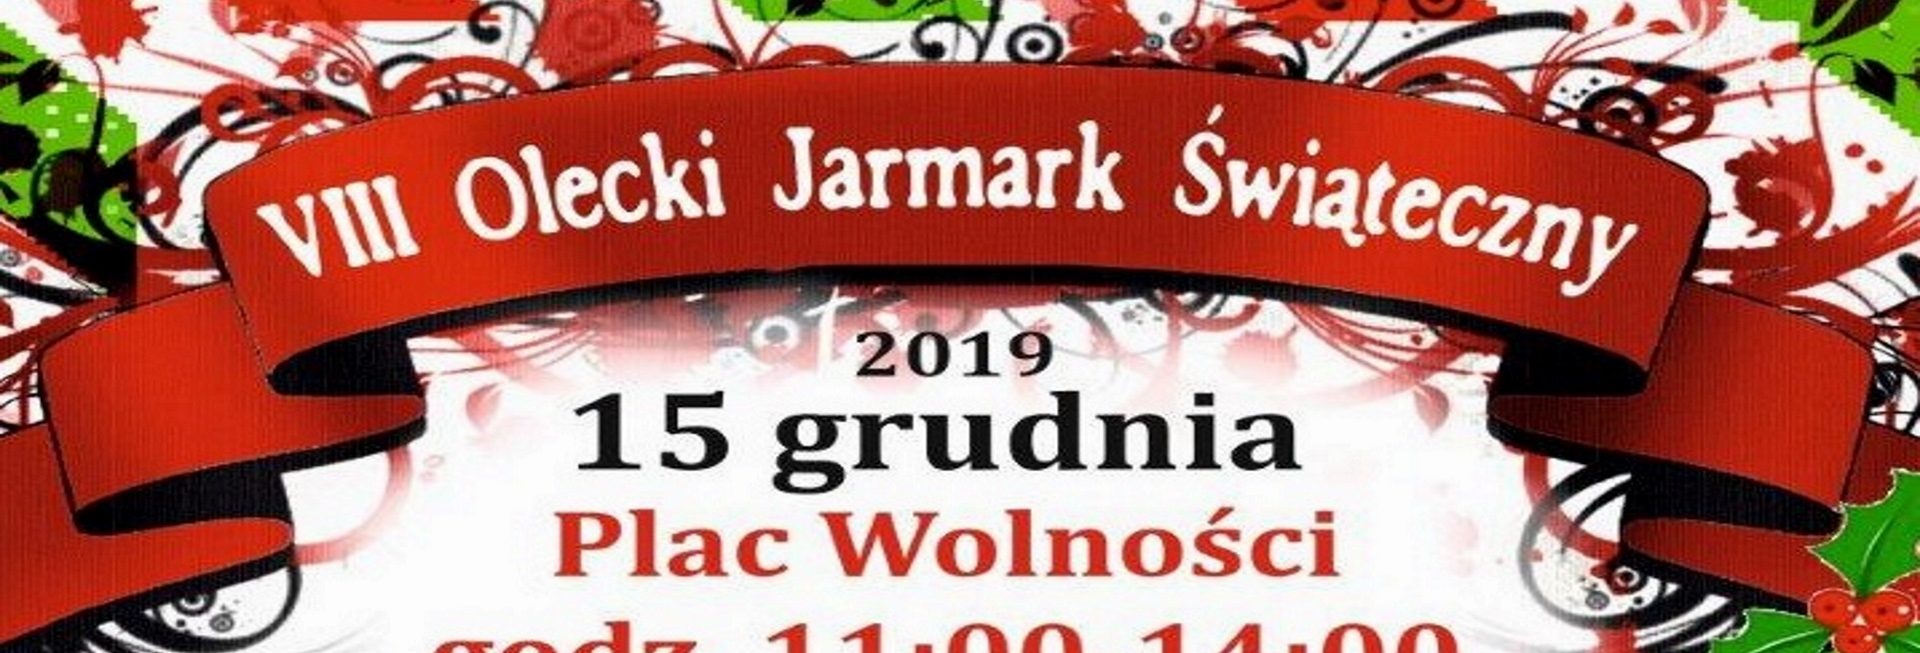 Zdjęcie - zapraszające na VIII Olecki Jarmark Świąteczny. Na zdjęciu zawarta jest informacja o rozpoczęciu Jarmarku w Olecku od godz. 11:00 i zakończeniu godz. 14:00.  